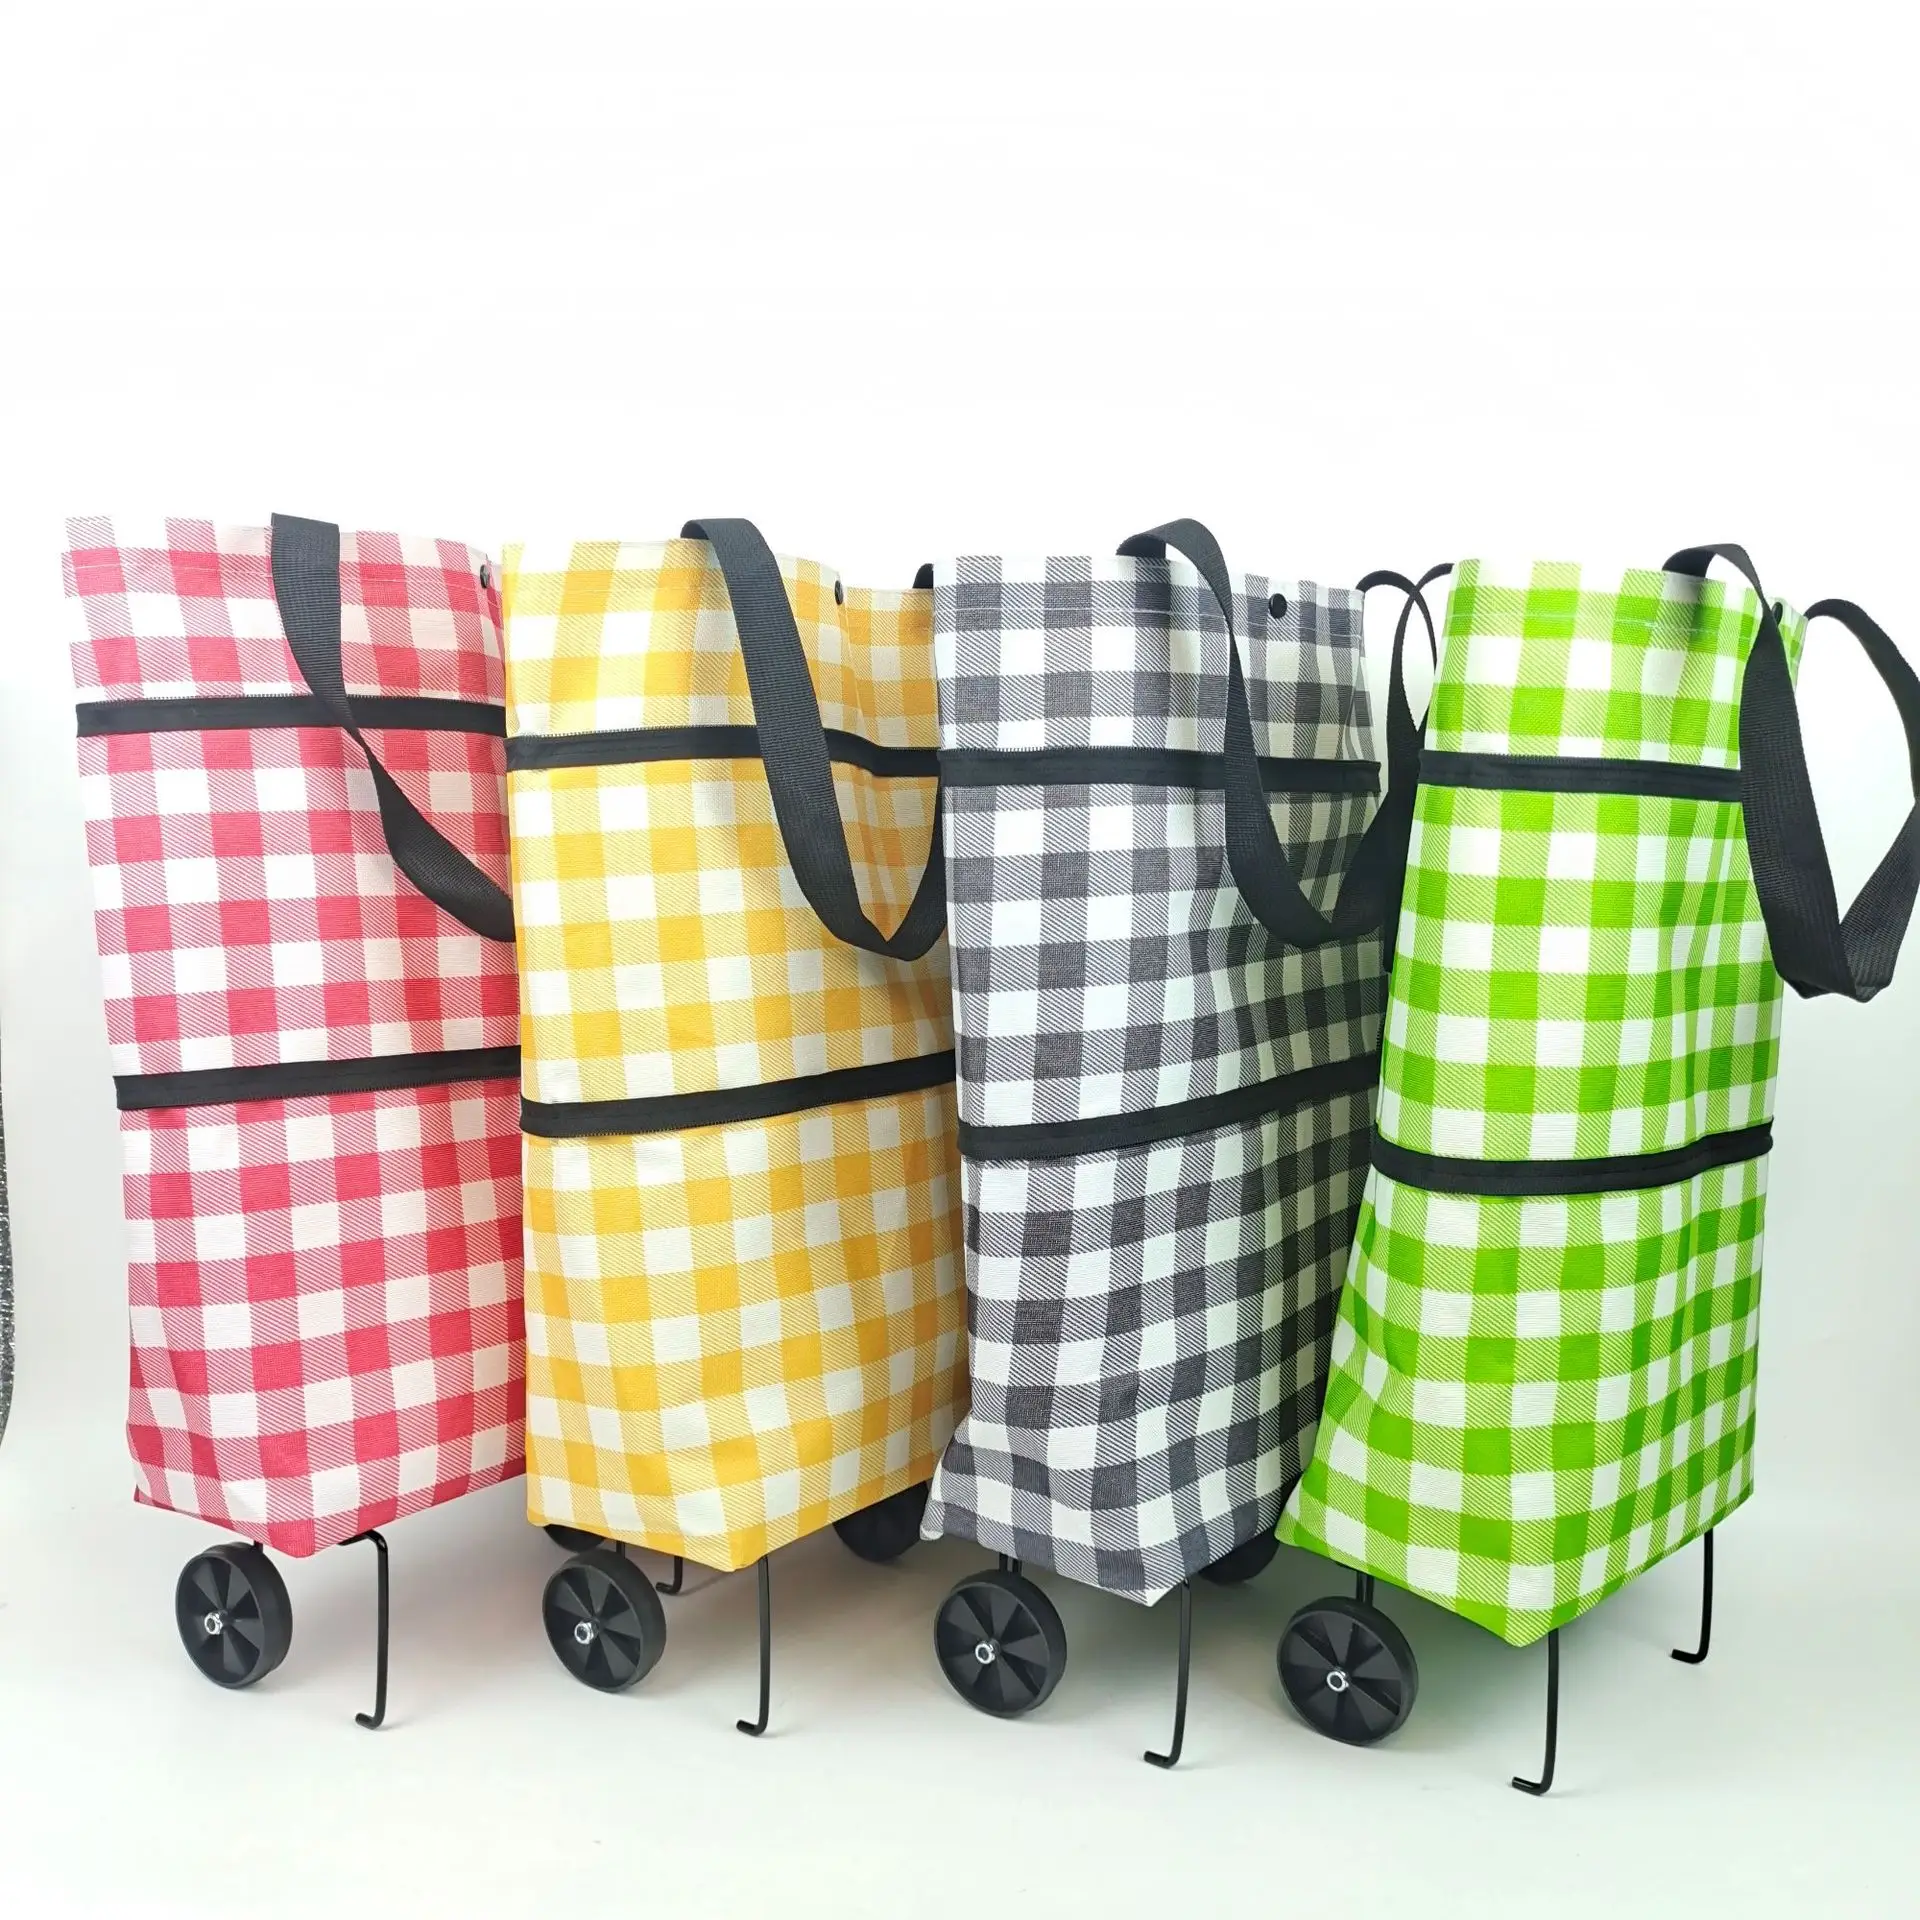 

Складная сумка на колесиках для покупок, большая многоразовая тканевая ручная сумка-тоут, Экологичная сумка для супермаркетов, продуктов